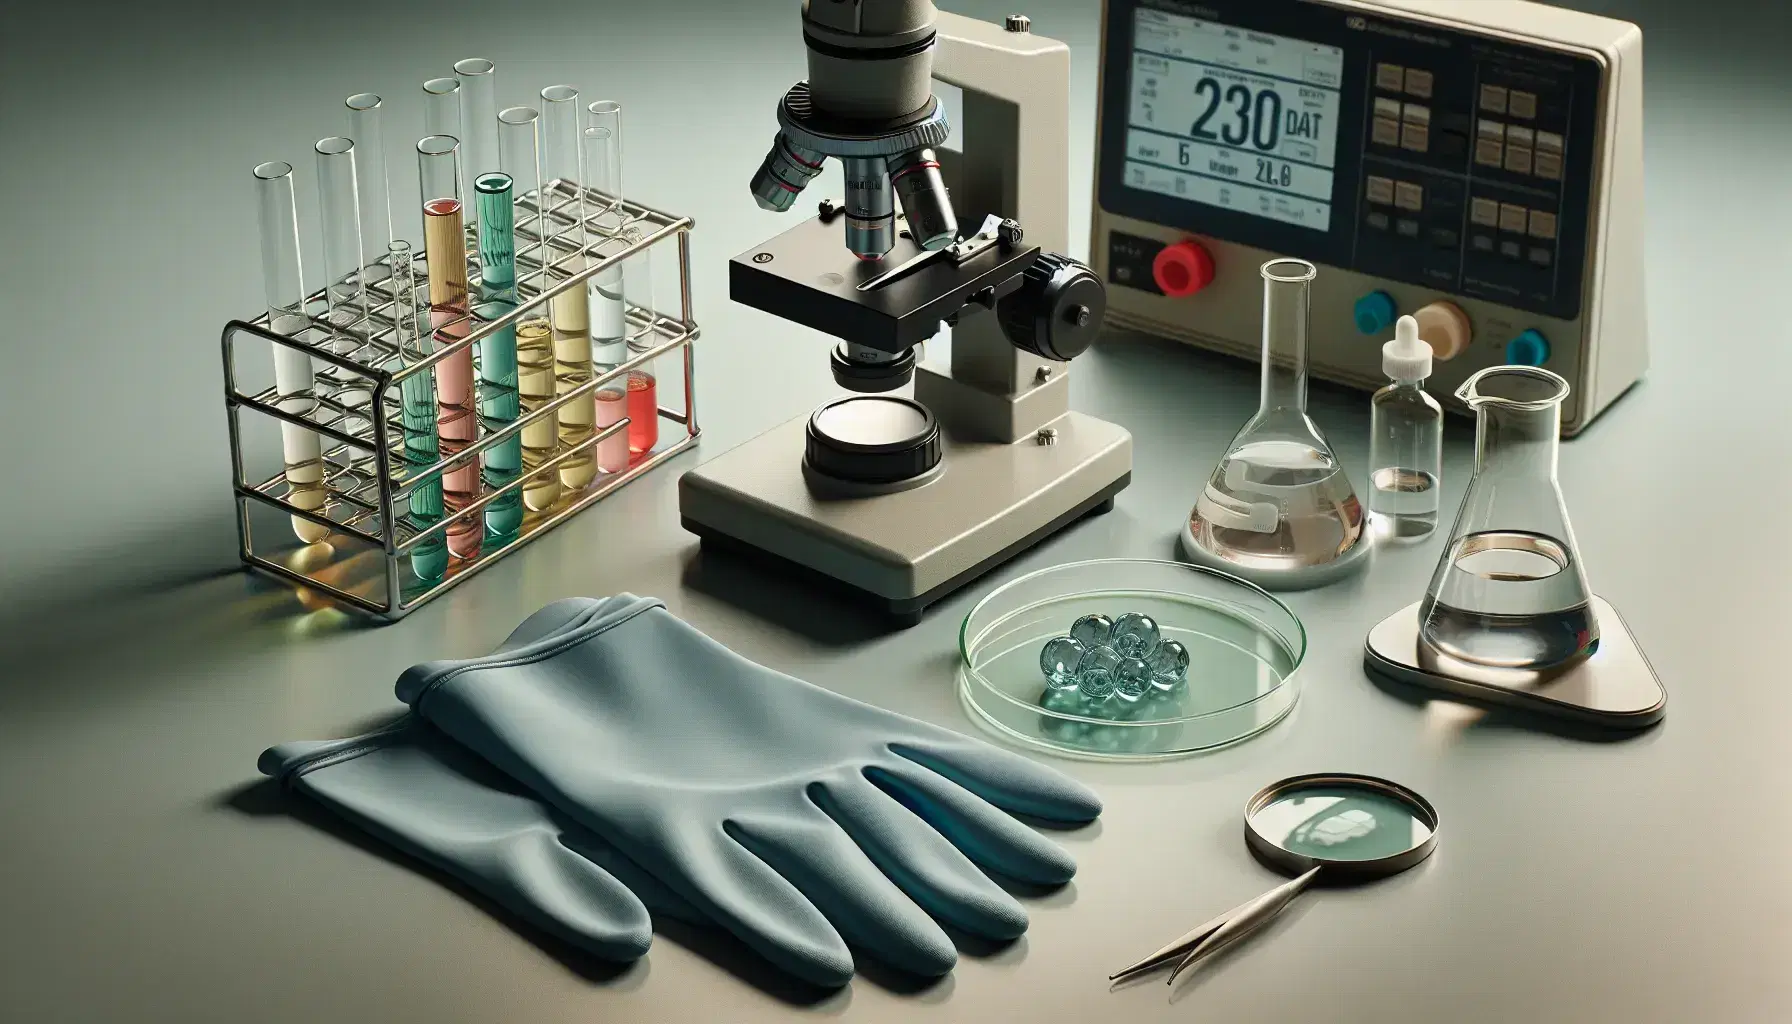 Mesa de laboratorio con guantes de seguridad, microscopio examinando muestra cristalina, tubos de ensayo con líquidos de colores y balanza analítica digital.